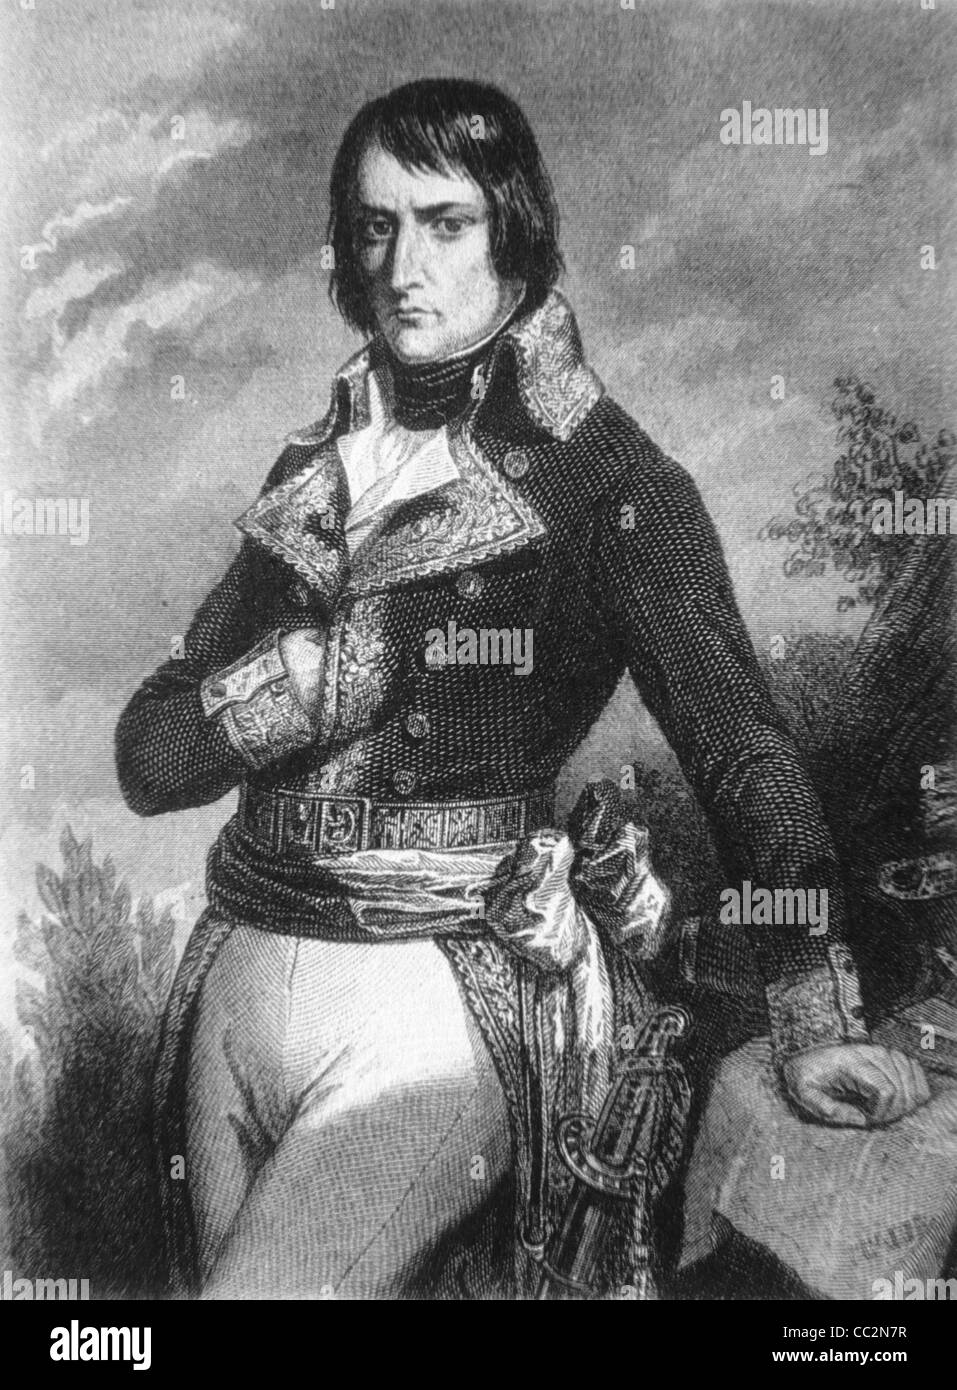 Retrato de Napoleón Bonaparte I (1769-1821) Emperador francés. Retrato de tres cuartos de longitud. Ilustración Vintage o Grabado Foto de stock